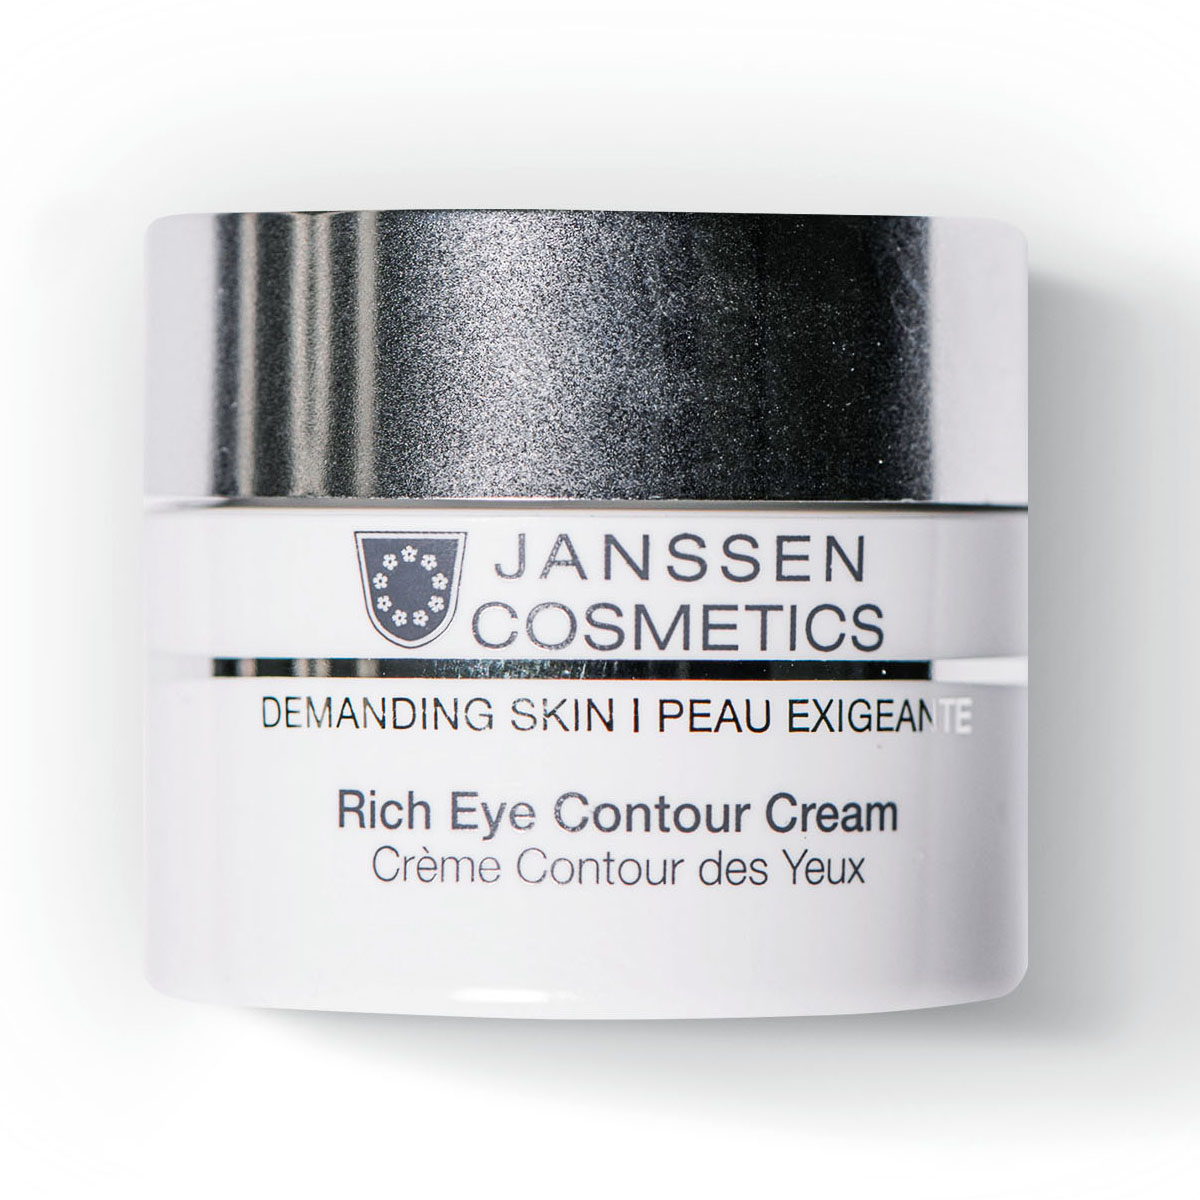 Янсен Косметикс Питательный крем для кожи вокруг глаз Rich Eye Contour Cream, 15 мл (Janssen Cosmetics, Demanding skin) фото 0